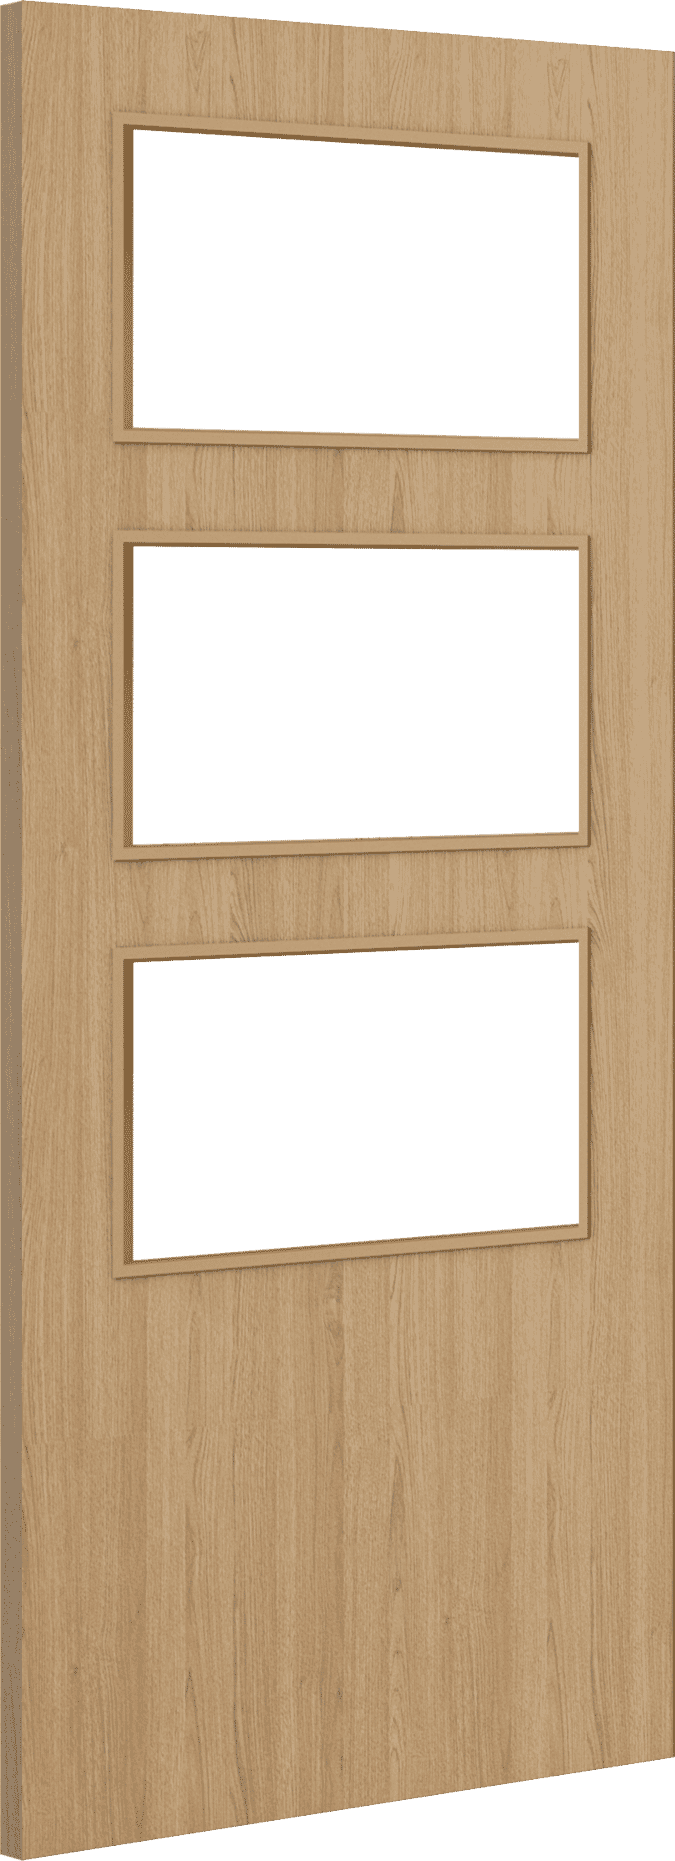 1981mm x 838mm x 44mm (33") Architectural Oak 03 Clear Glazed - Prefinished FD30 Fire Door Blank